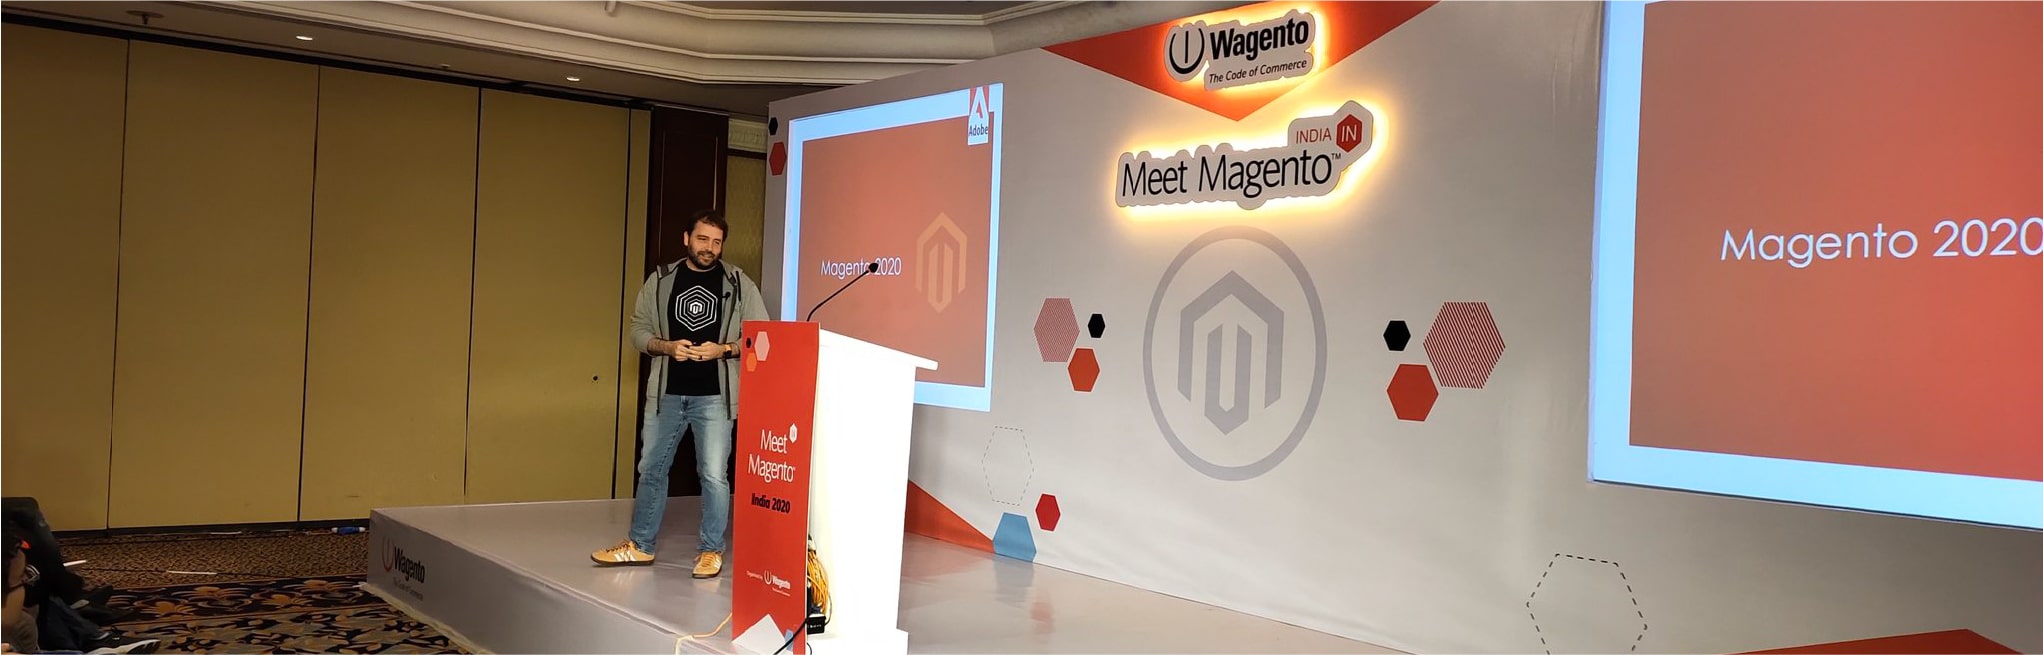 Summing-Up Meet Magento India 2020